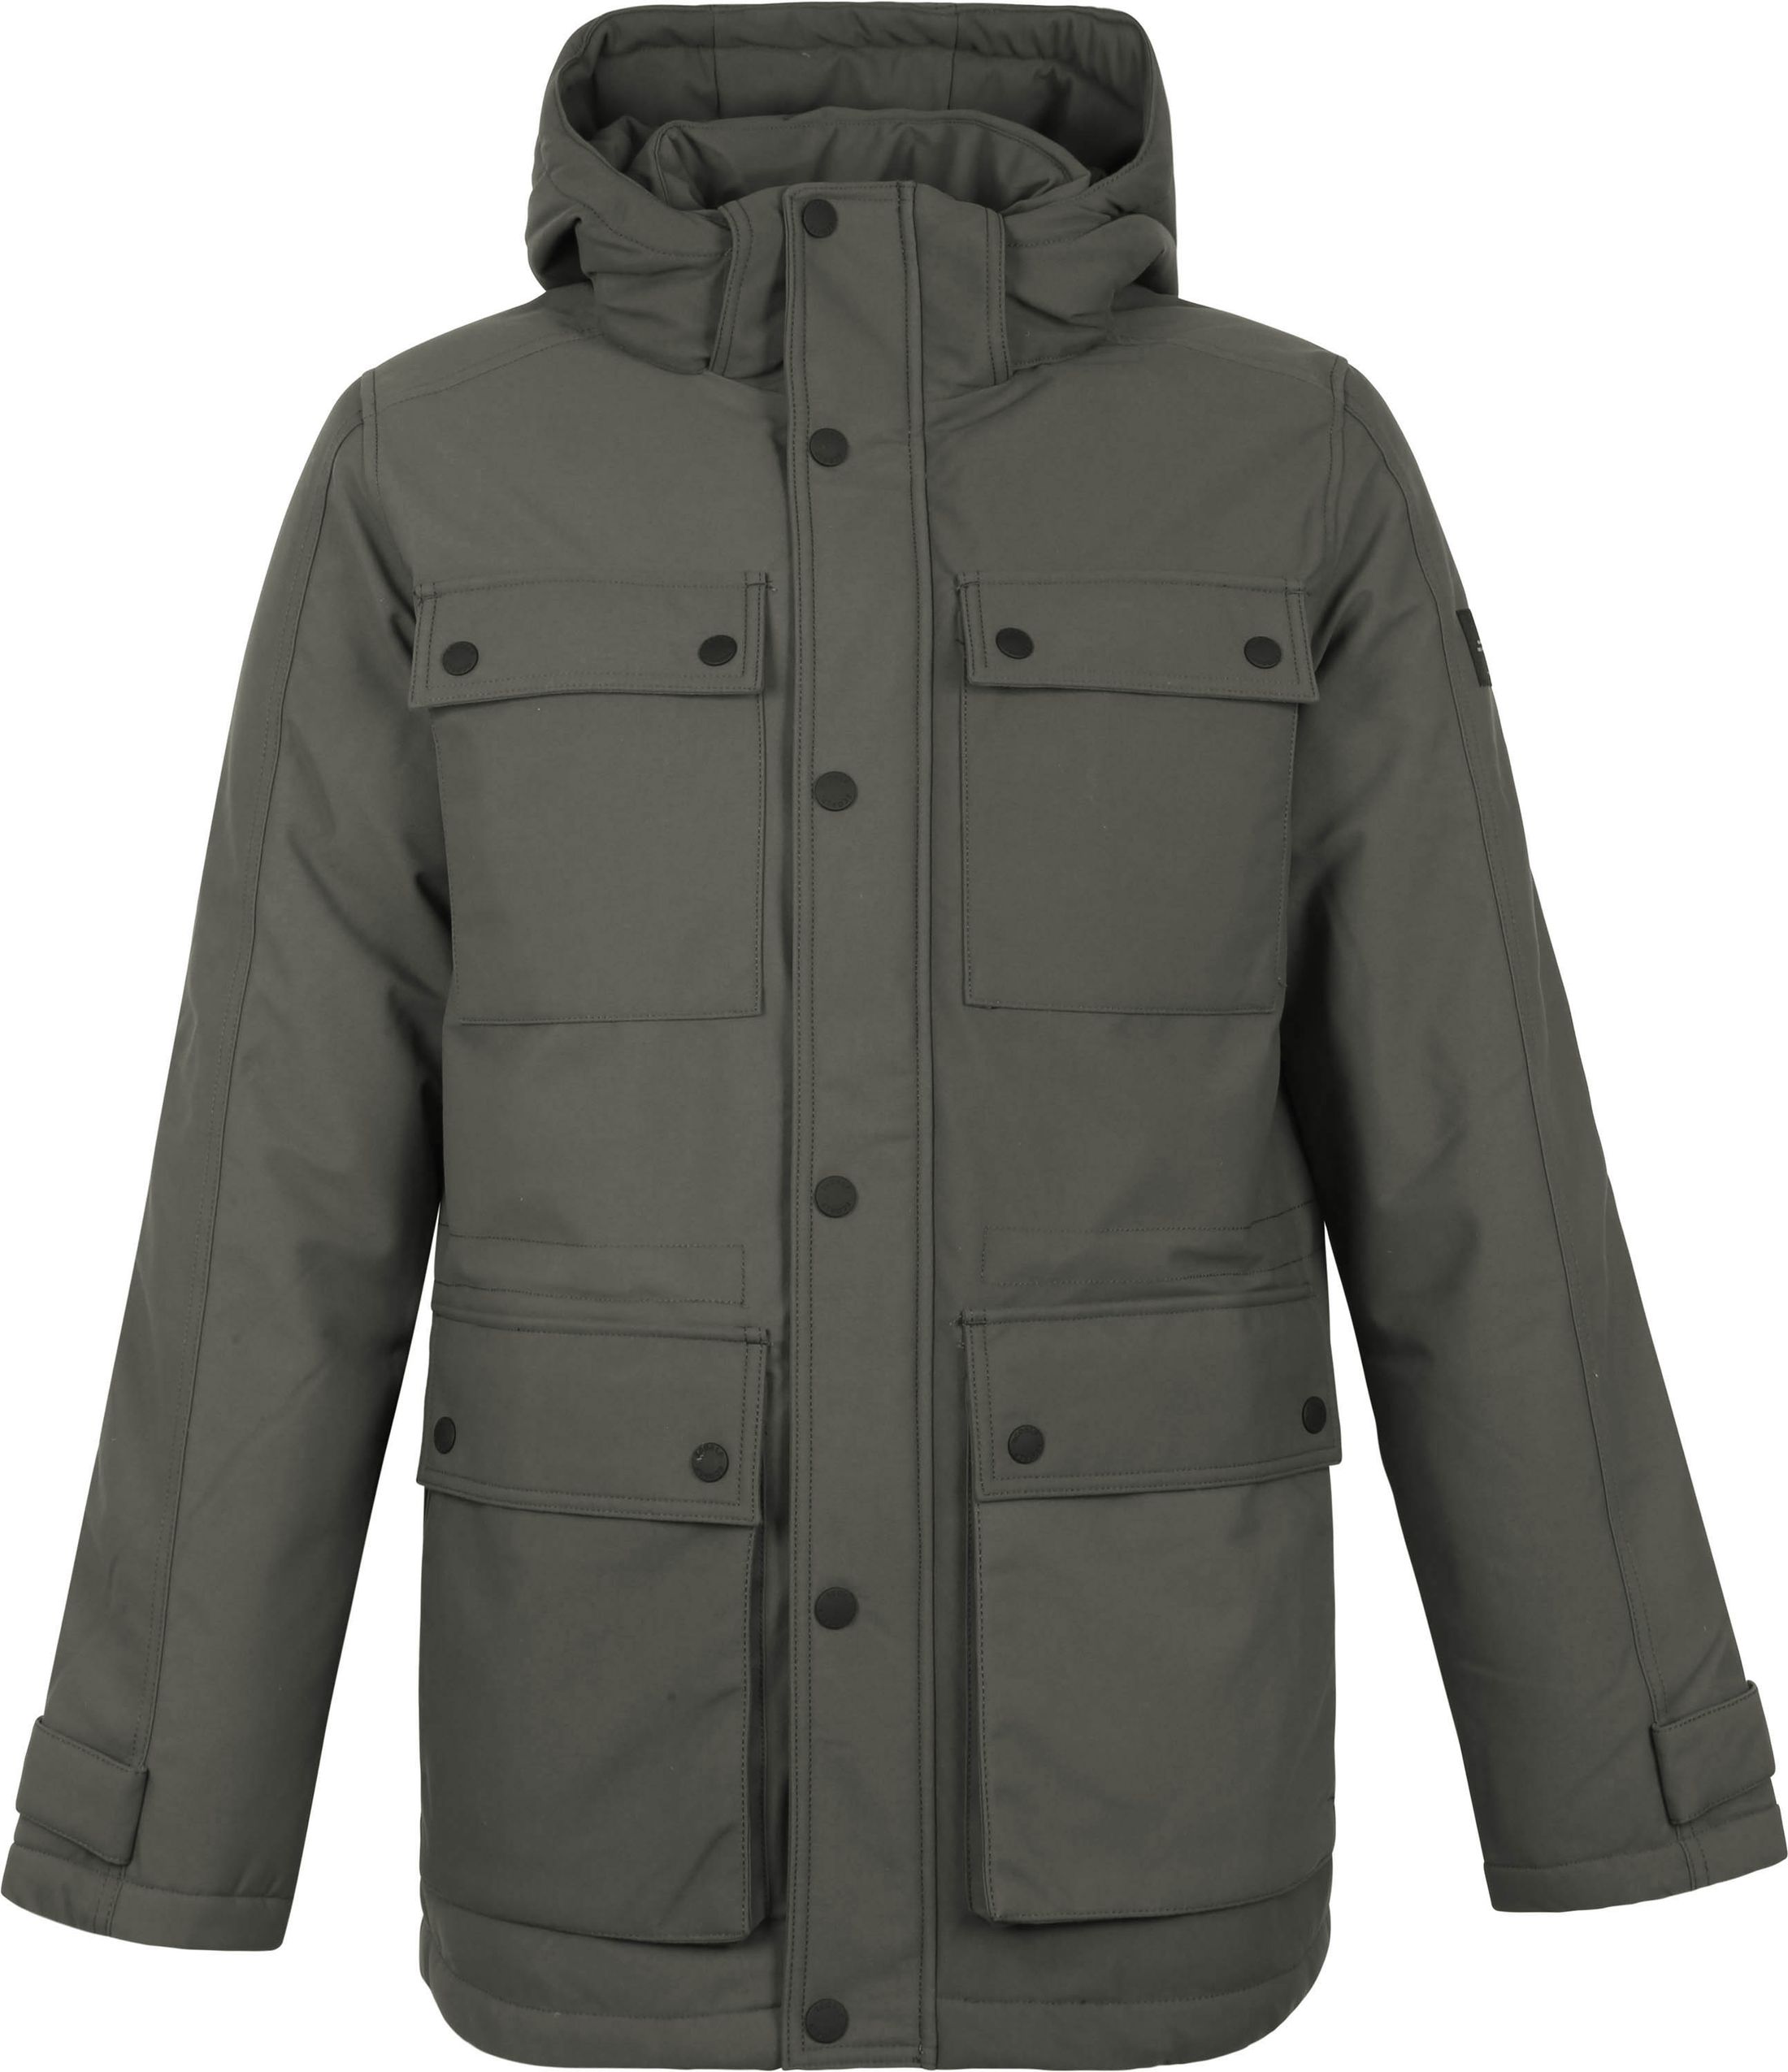 Ecoalf Luena Jacket Khaki size XL